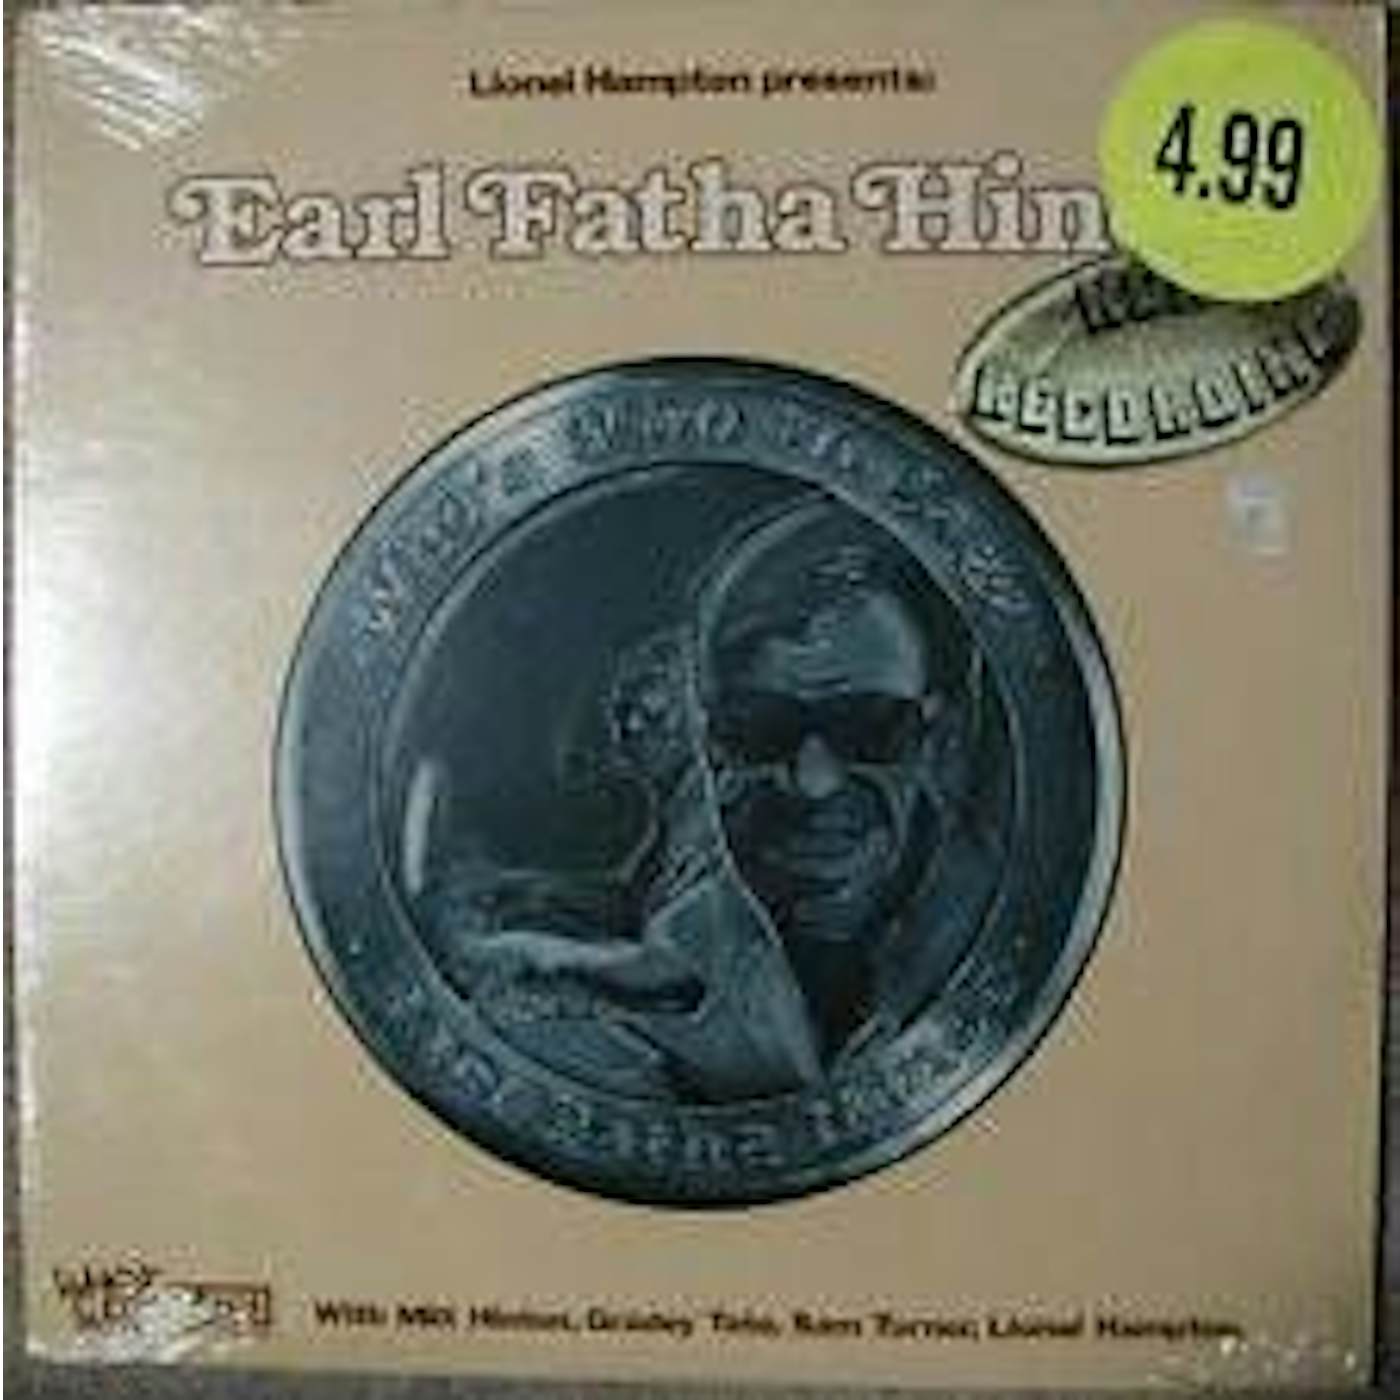 Earl Hines LIONEL HAMPTON PRESENTS: EARL FATHA HINES CD